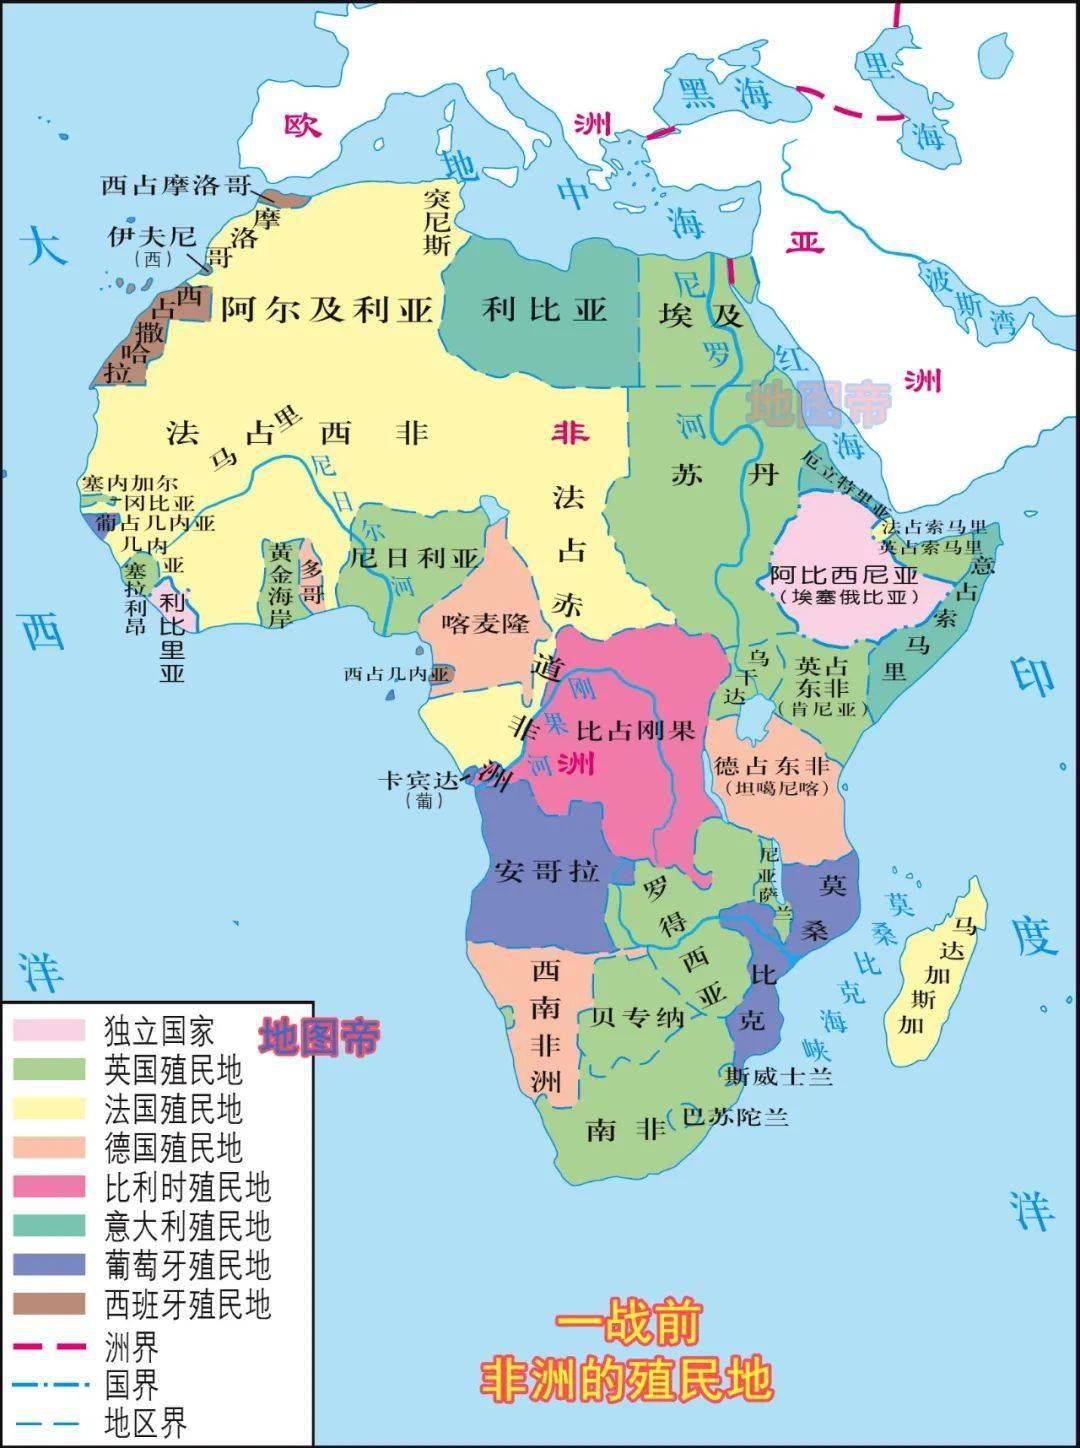 非洲喀麦隆头上那600公里长的鹿角将尼日利亚和乍得顶得不相连